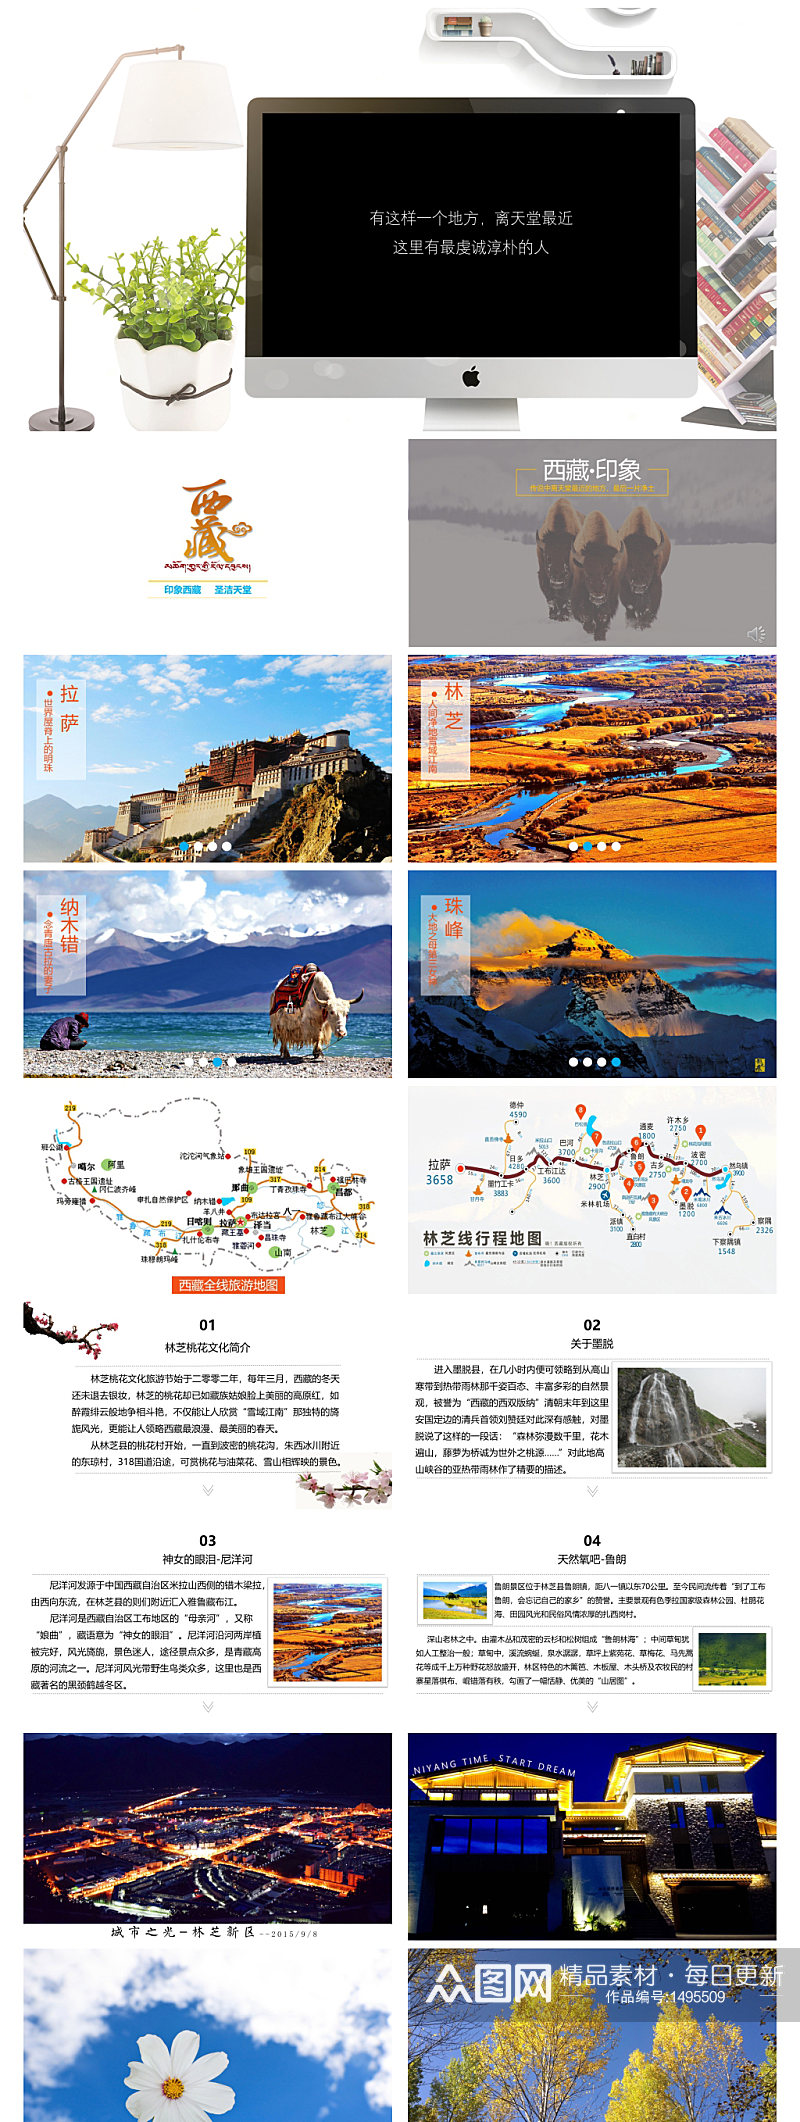 西藏旅游景点介绍PPT作品素材